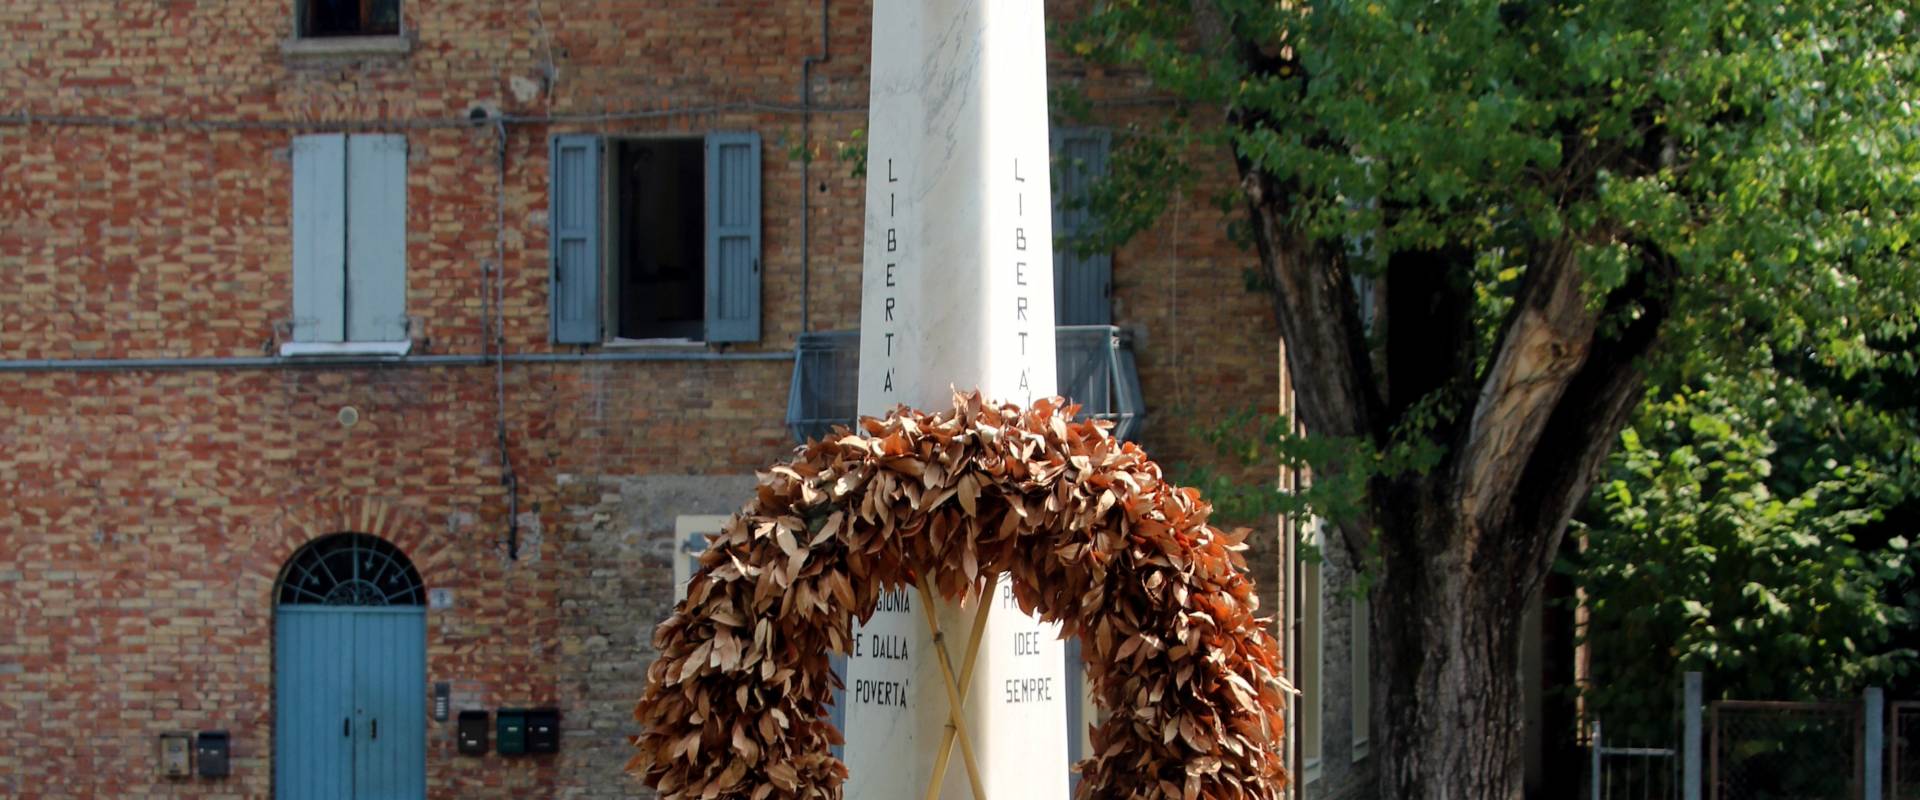 Monumento ai Caduti (Castelvetro di Modena) 01 foto di Mongolo1984